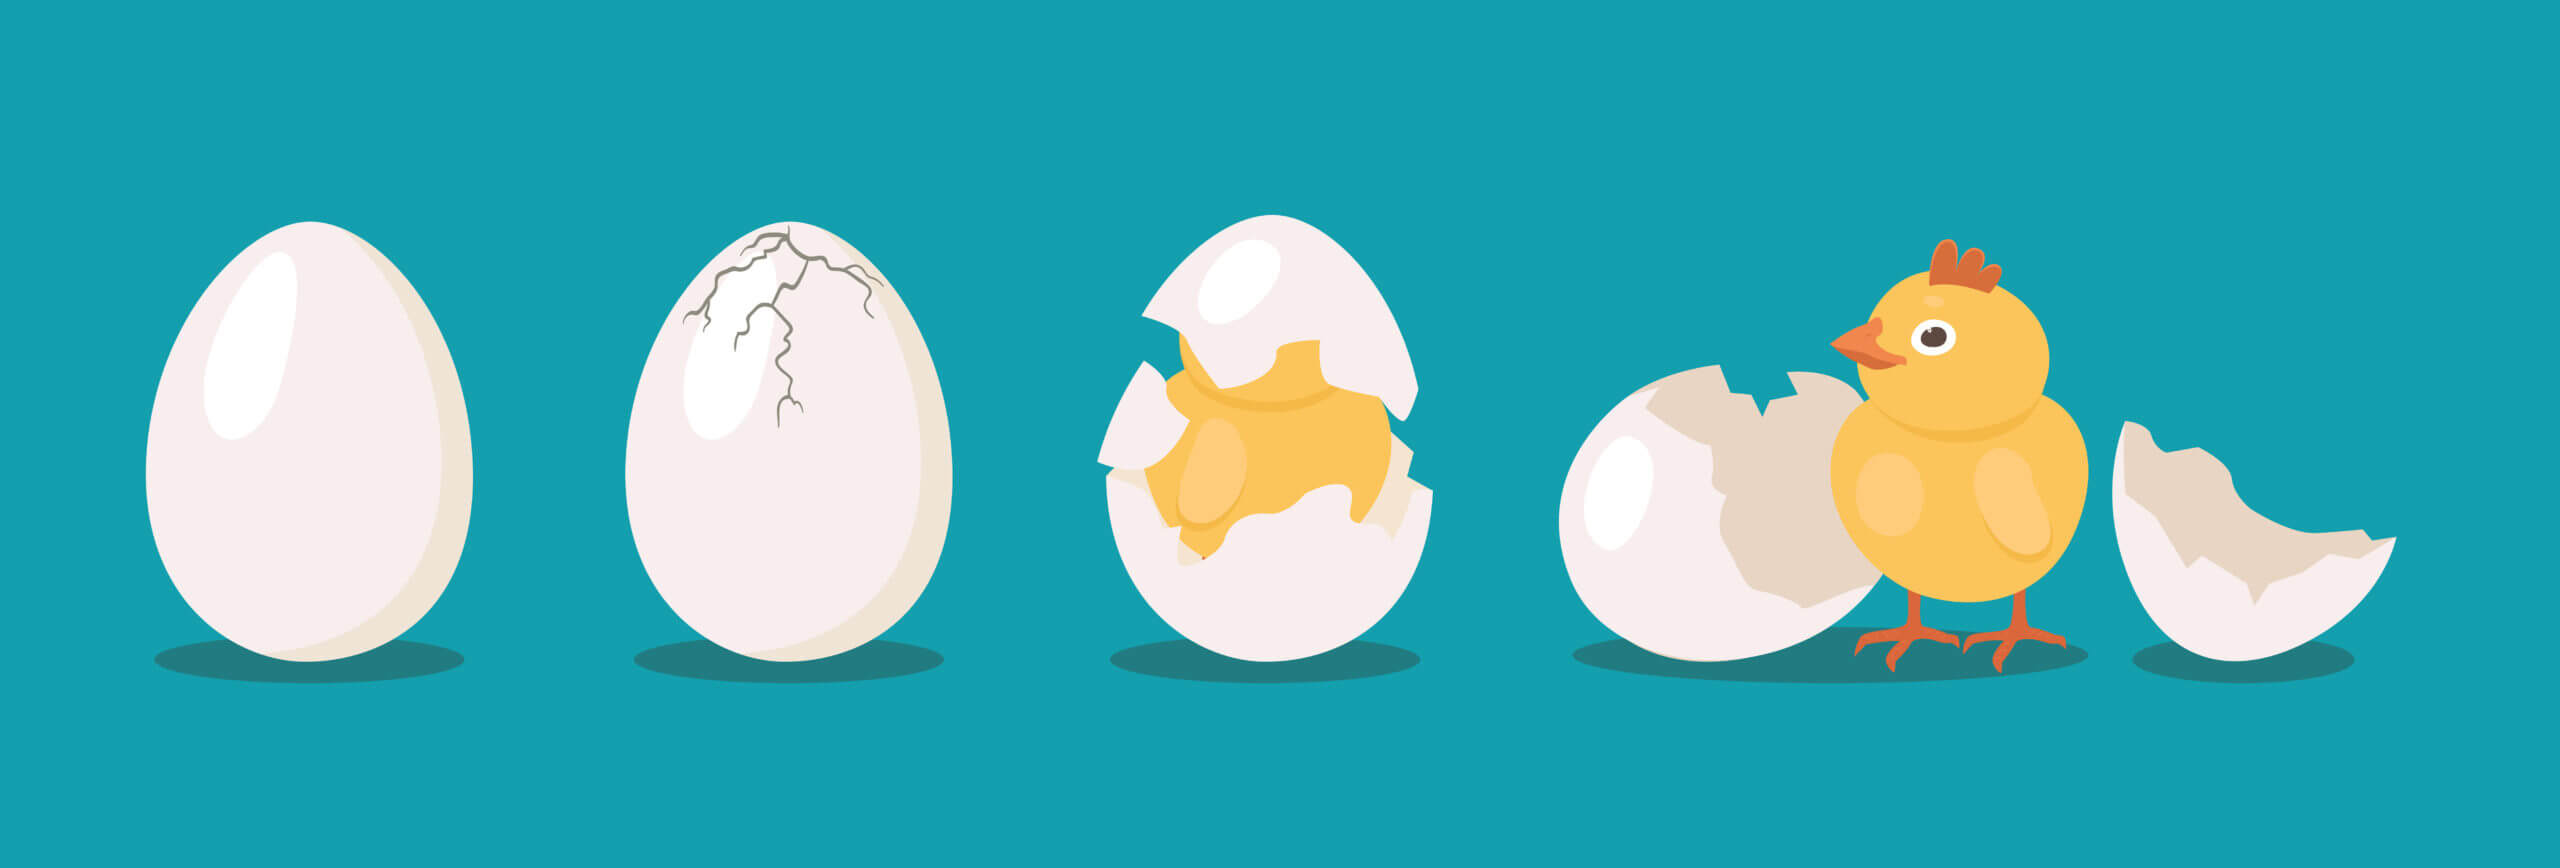 Hatching Chicken eggs animation